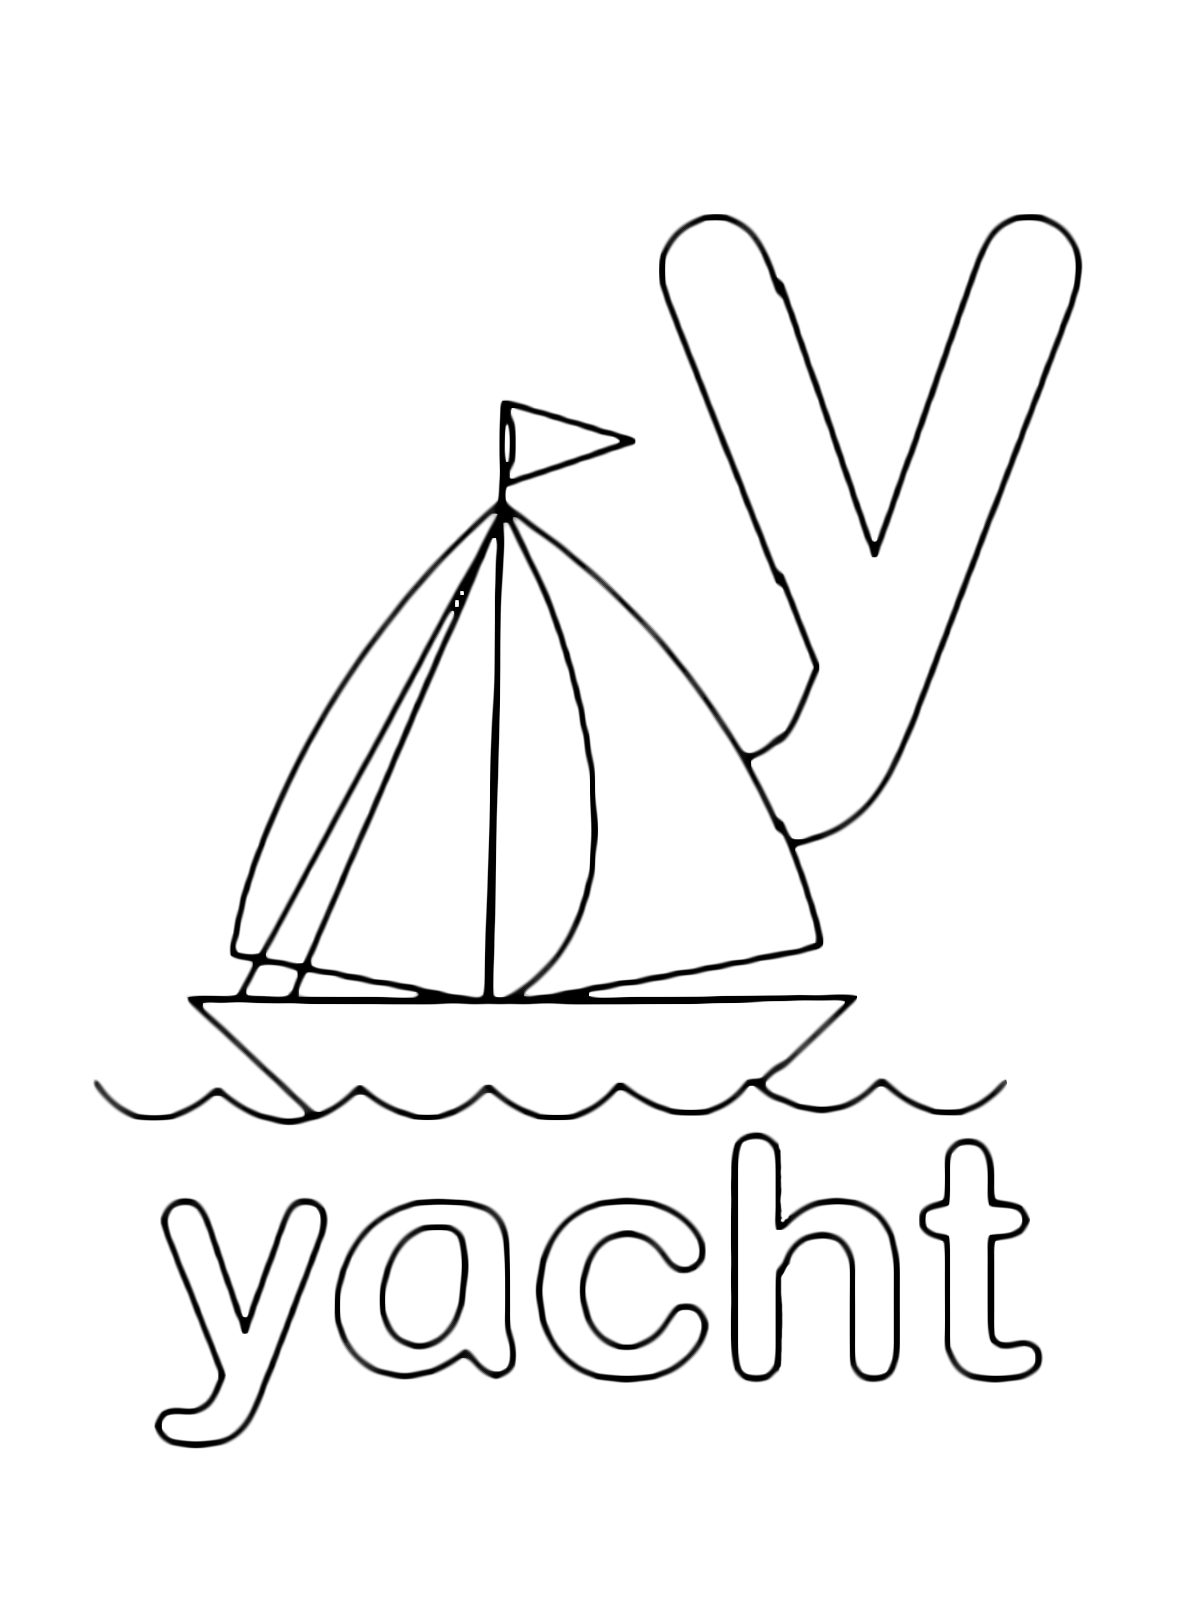 Lettere e numeri - Lettera y in stampato minuscolo di yacht (barca) in Inglese